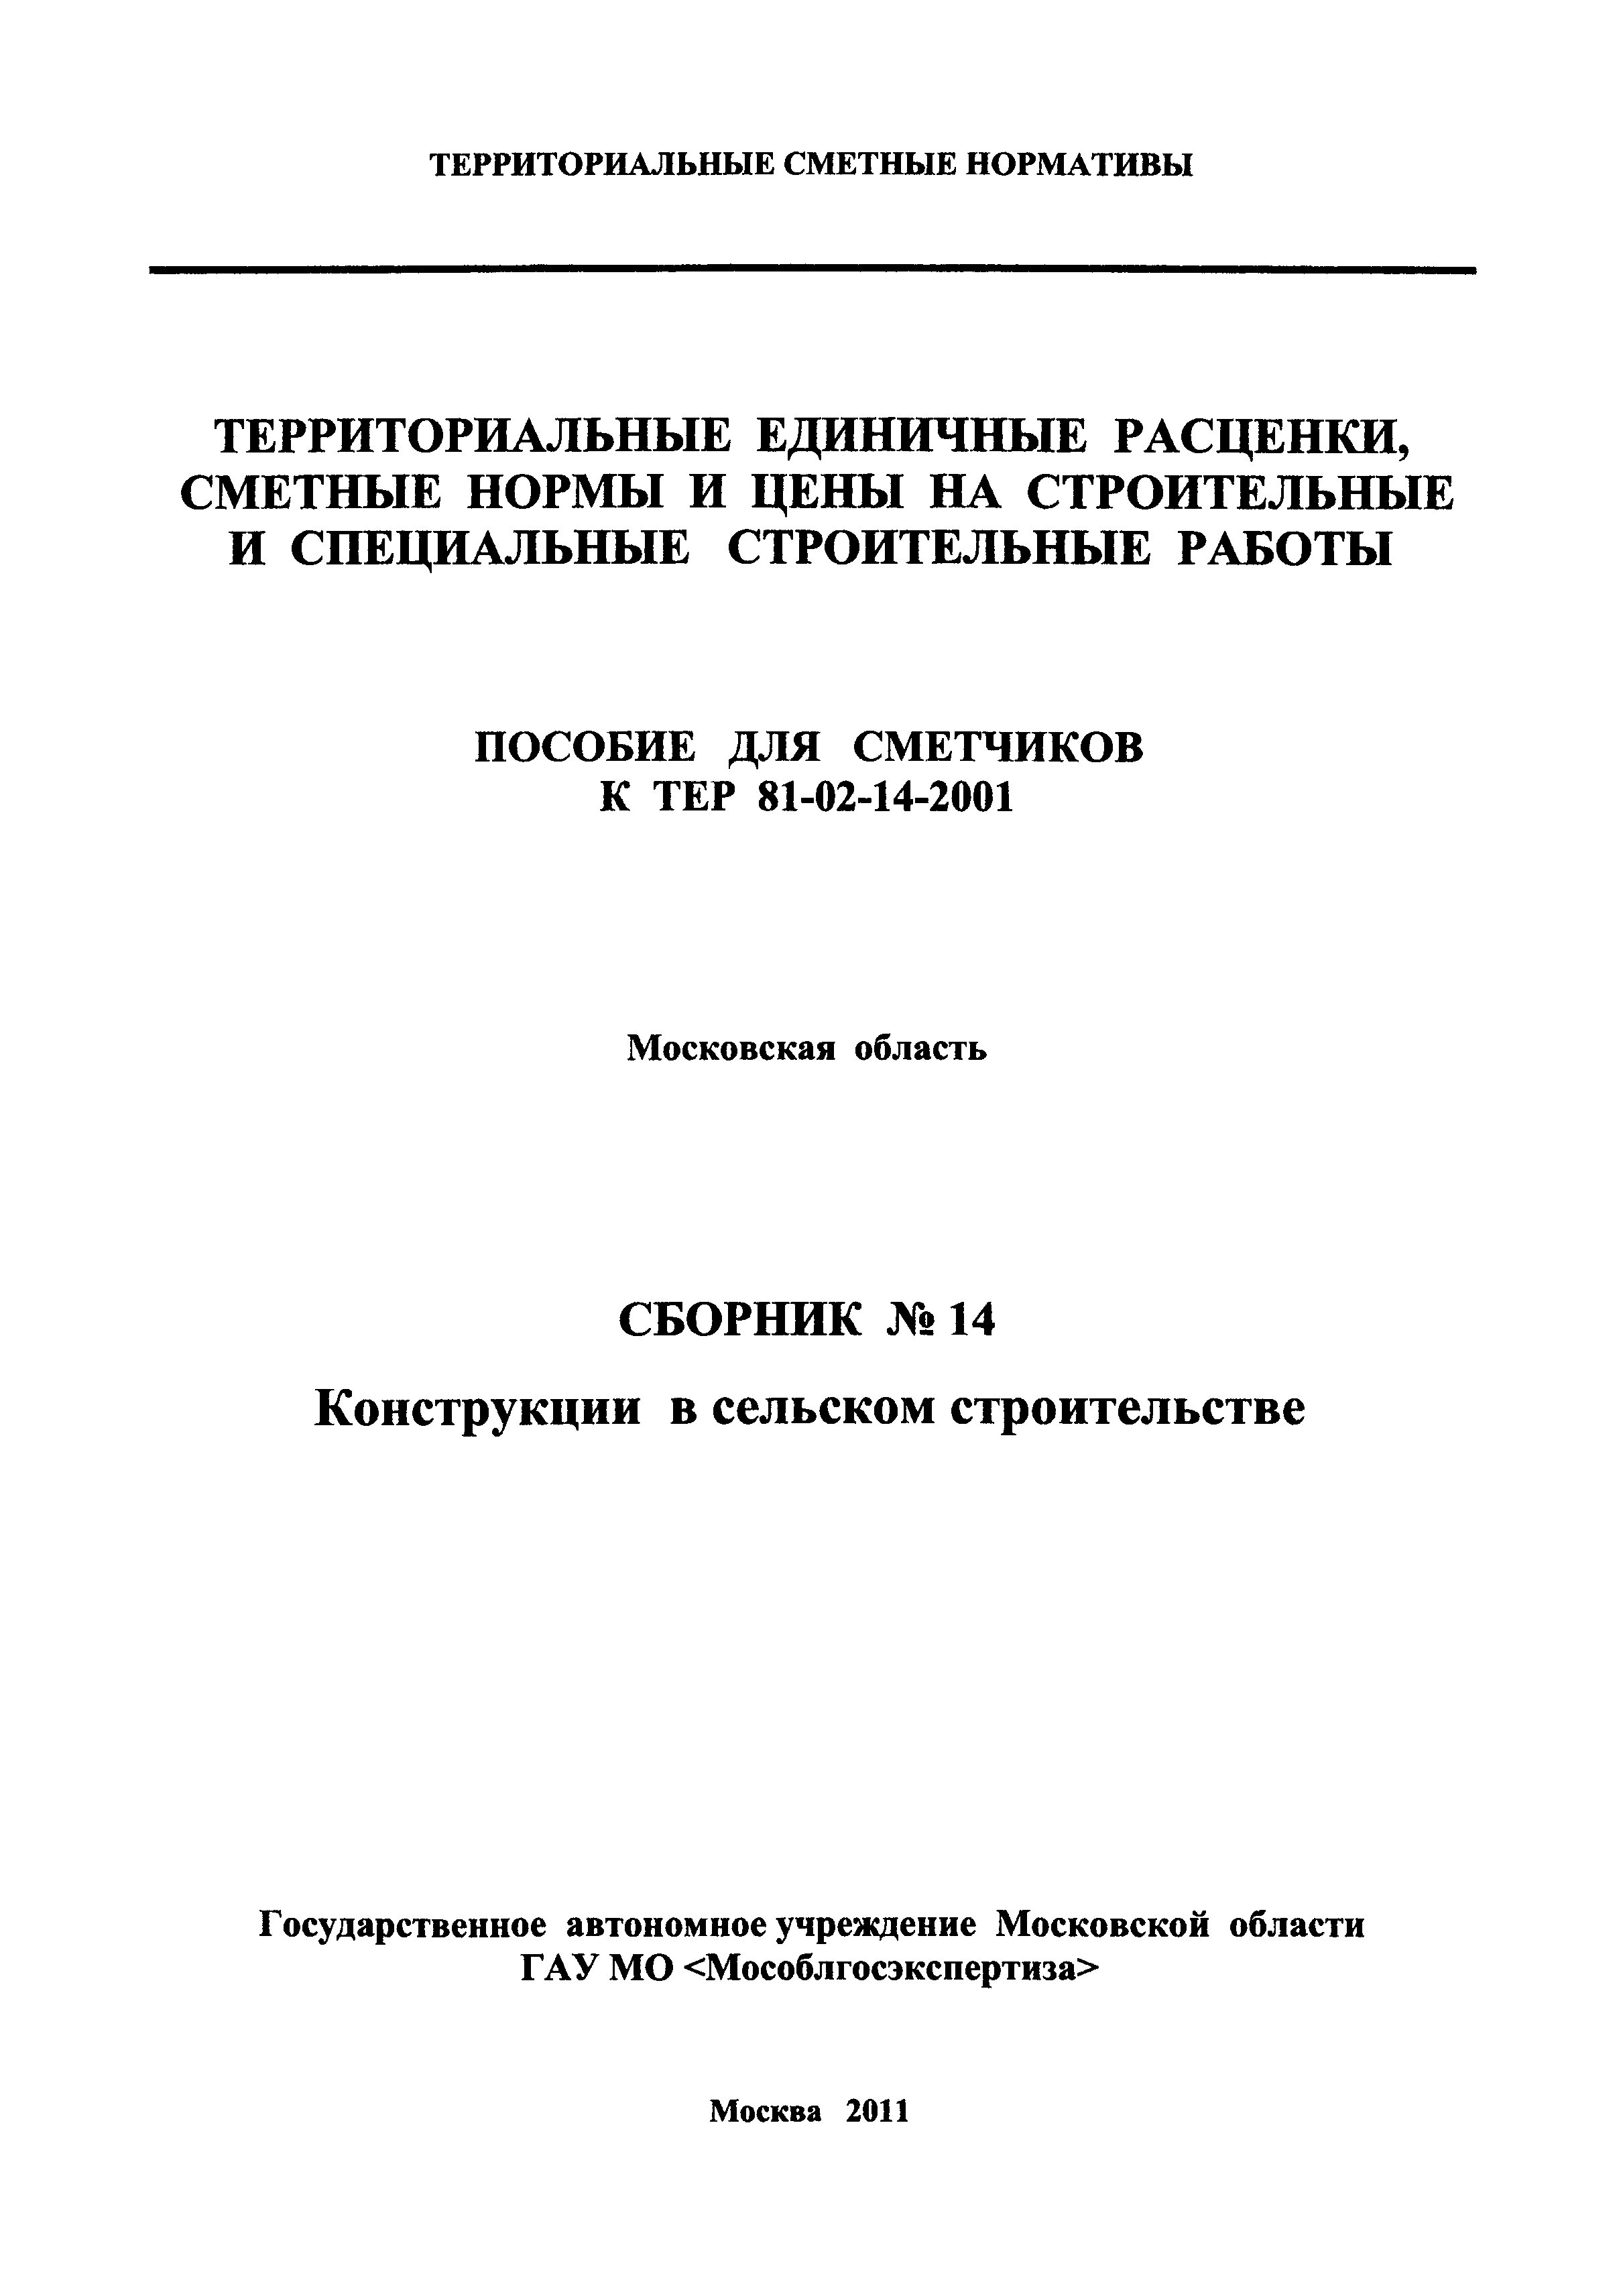 ГЭСНПиТЕР 2001-14 Московской области